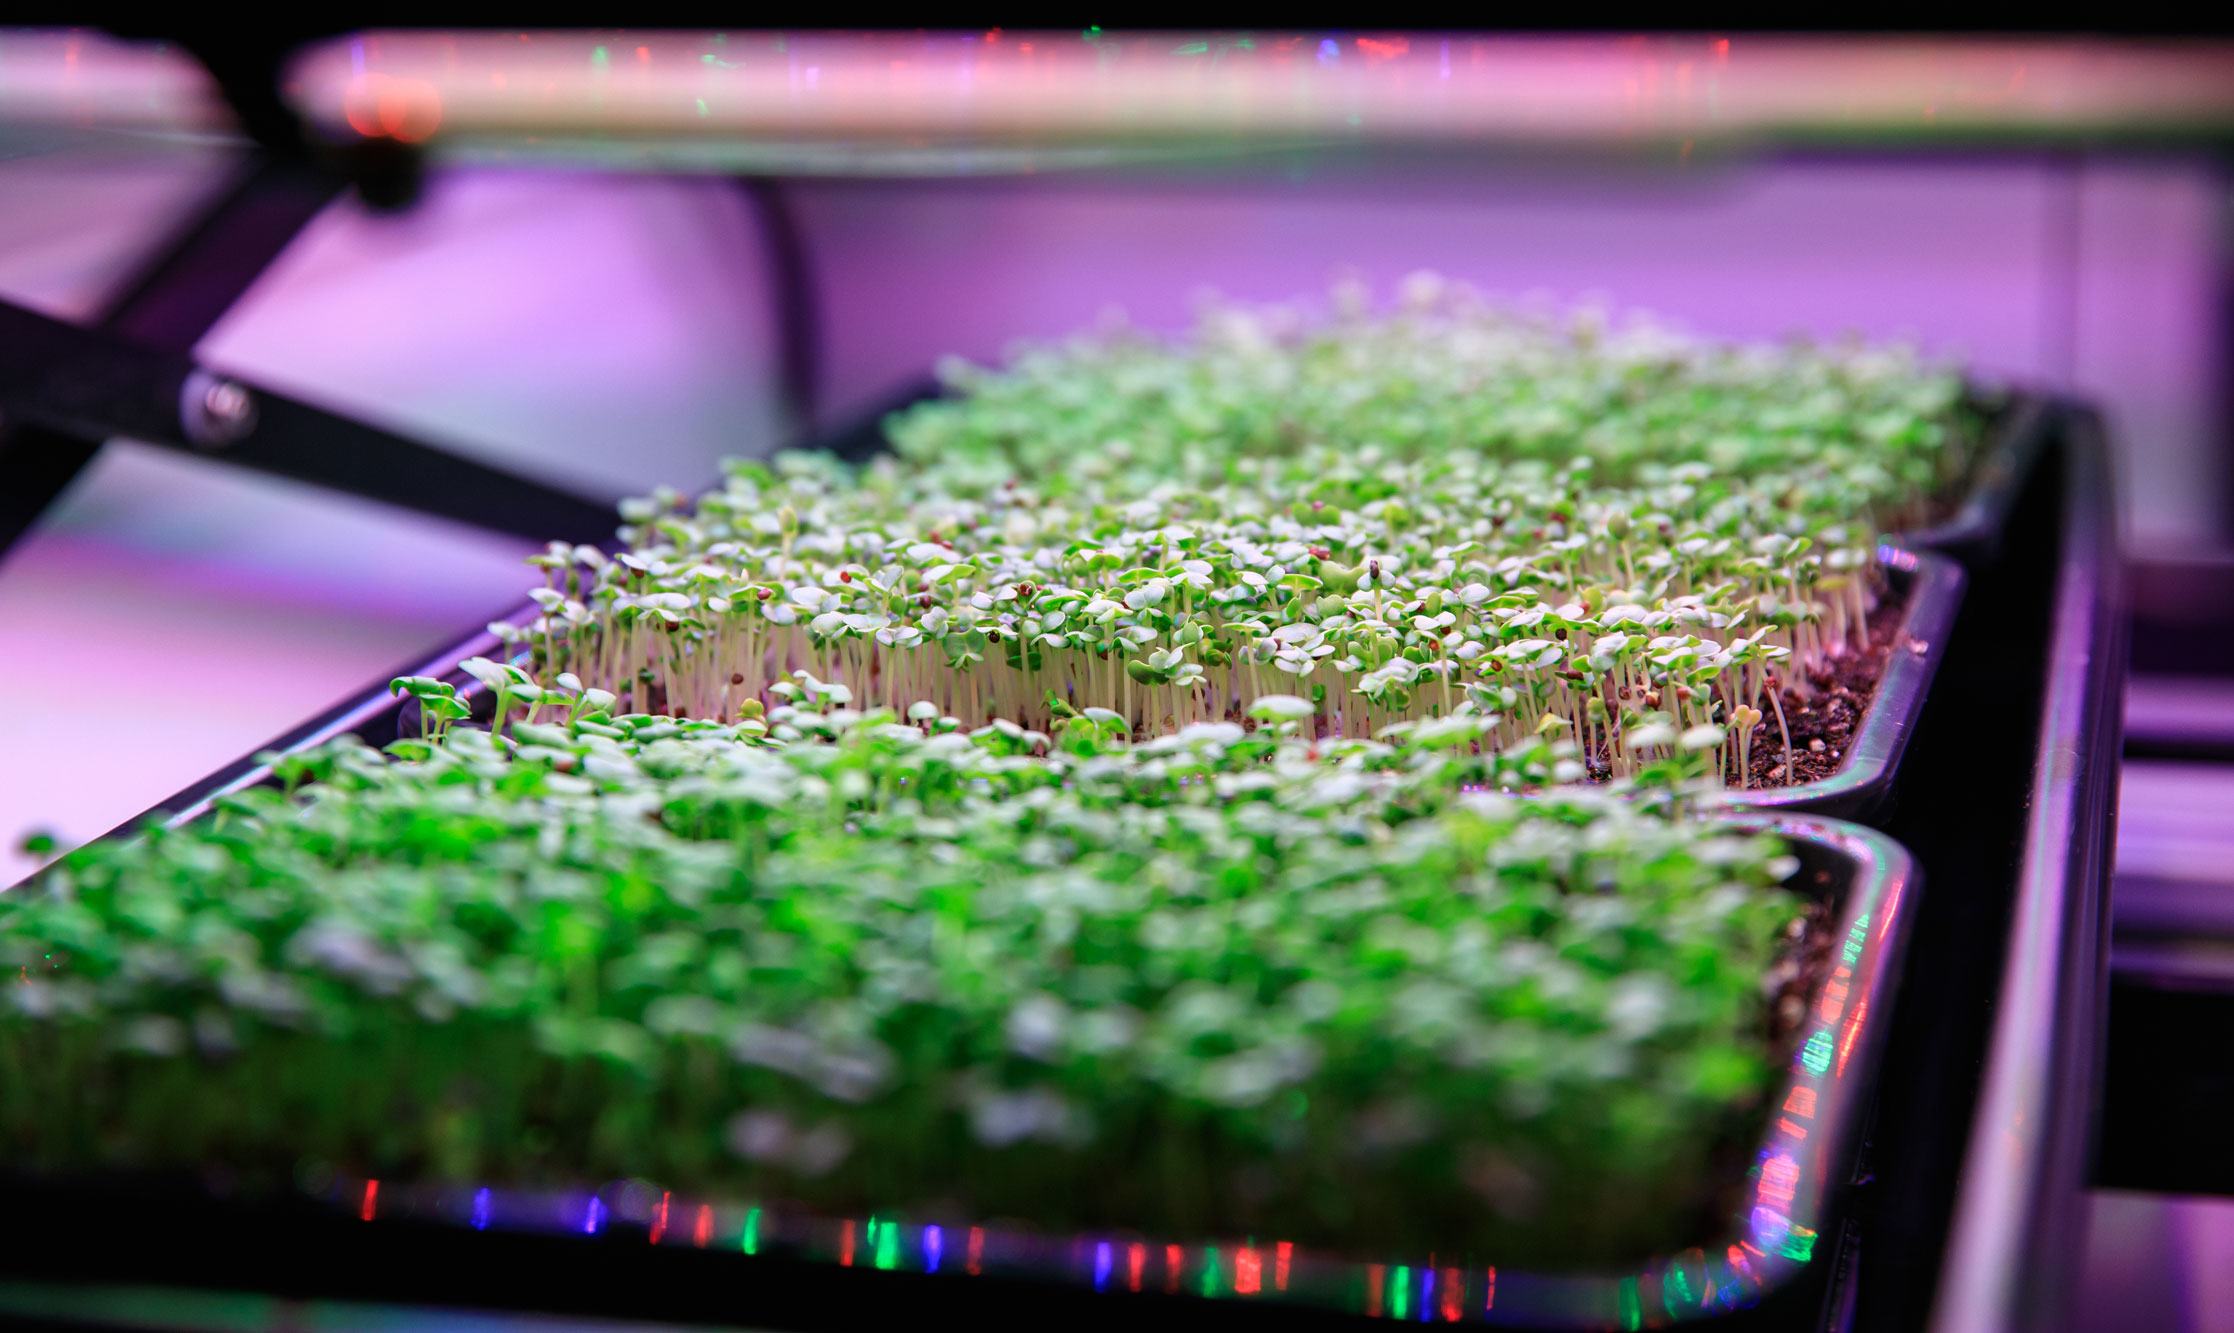 Besleyici mikro yeşillikler, NASA'nın Florida, ABD'deki Kennedy Uzay Merkezi'nde yetiştirilmektedir.